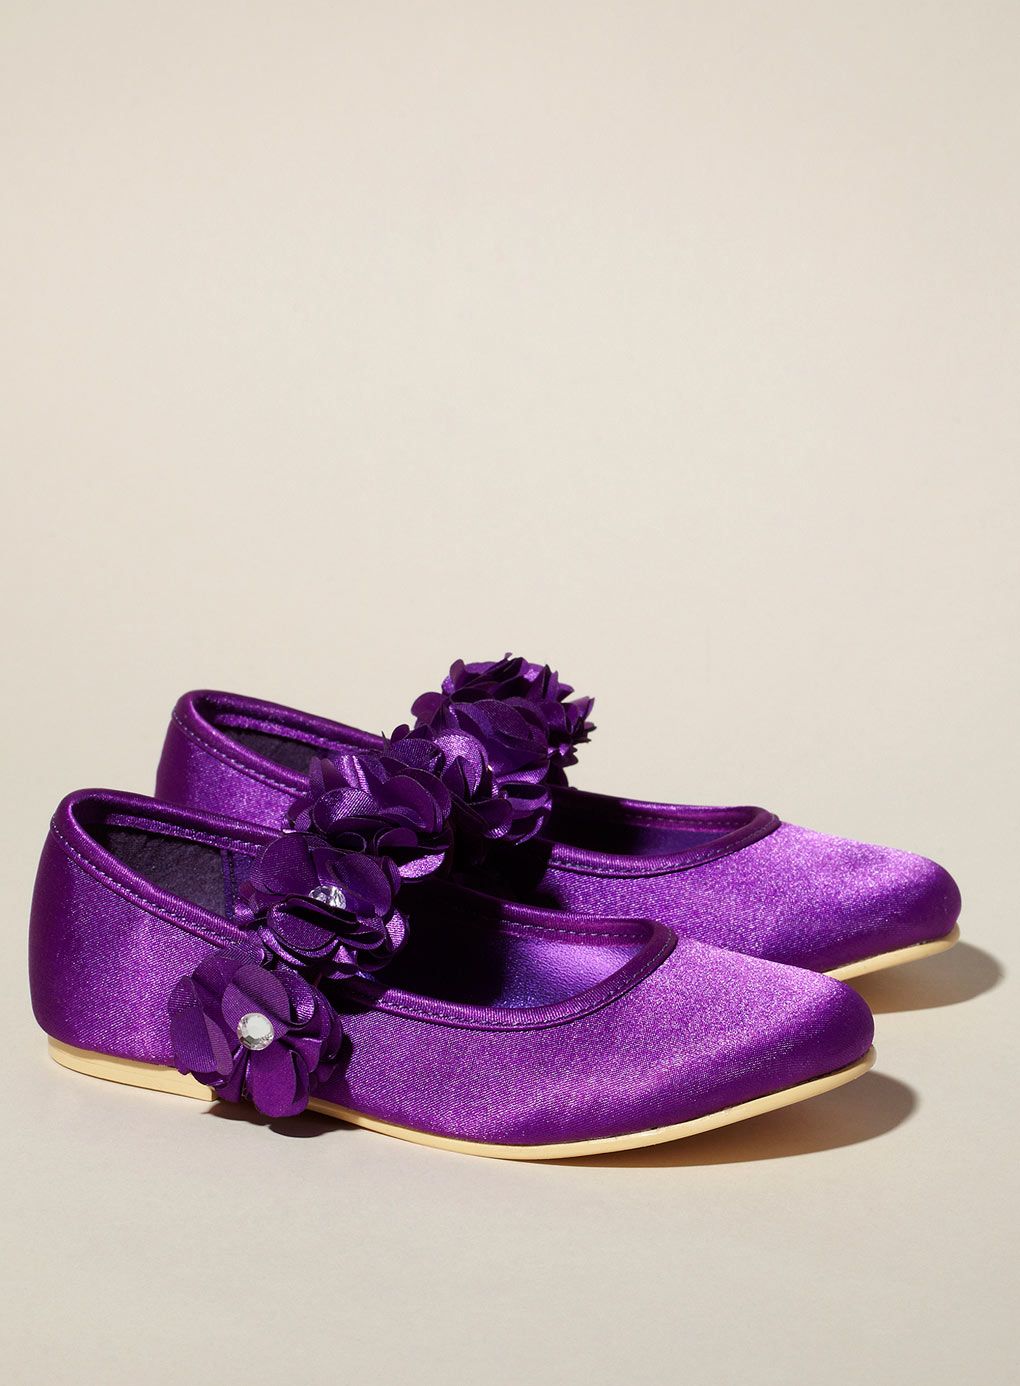 Purple Wedding Shoes Uk 2021